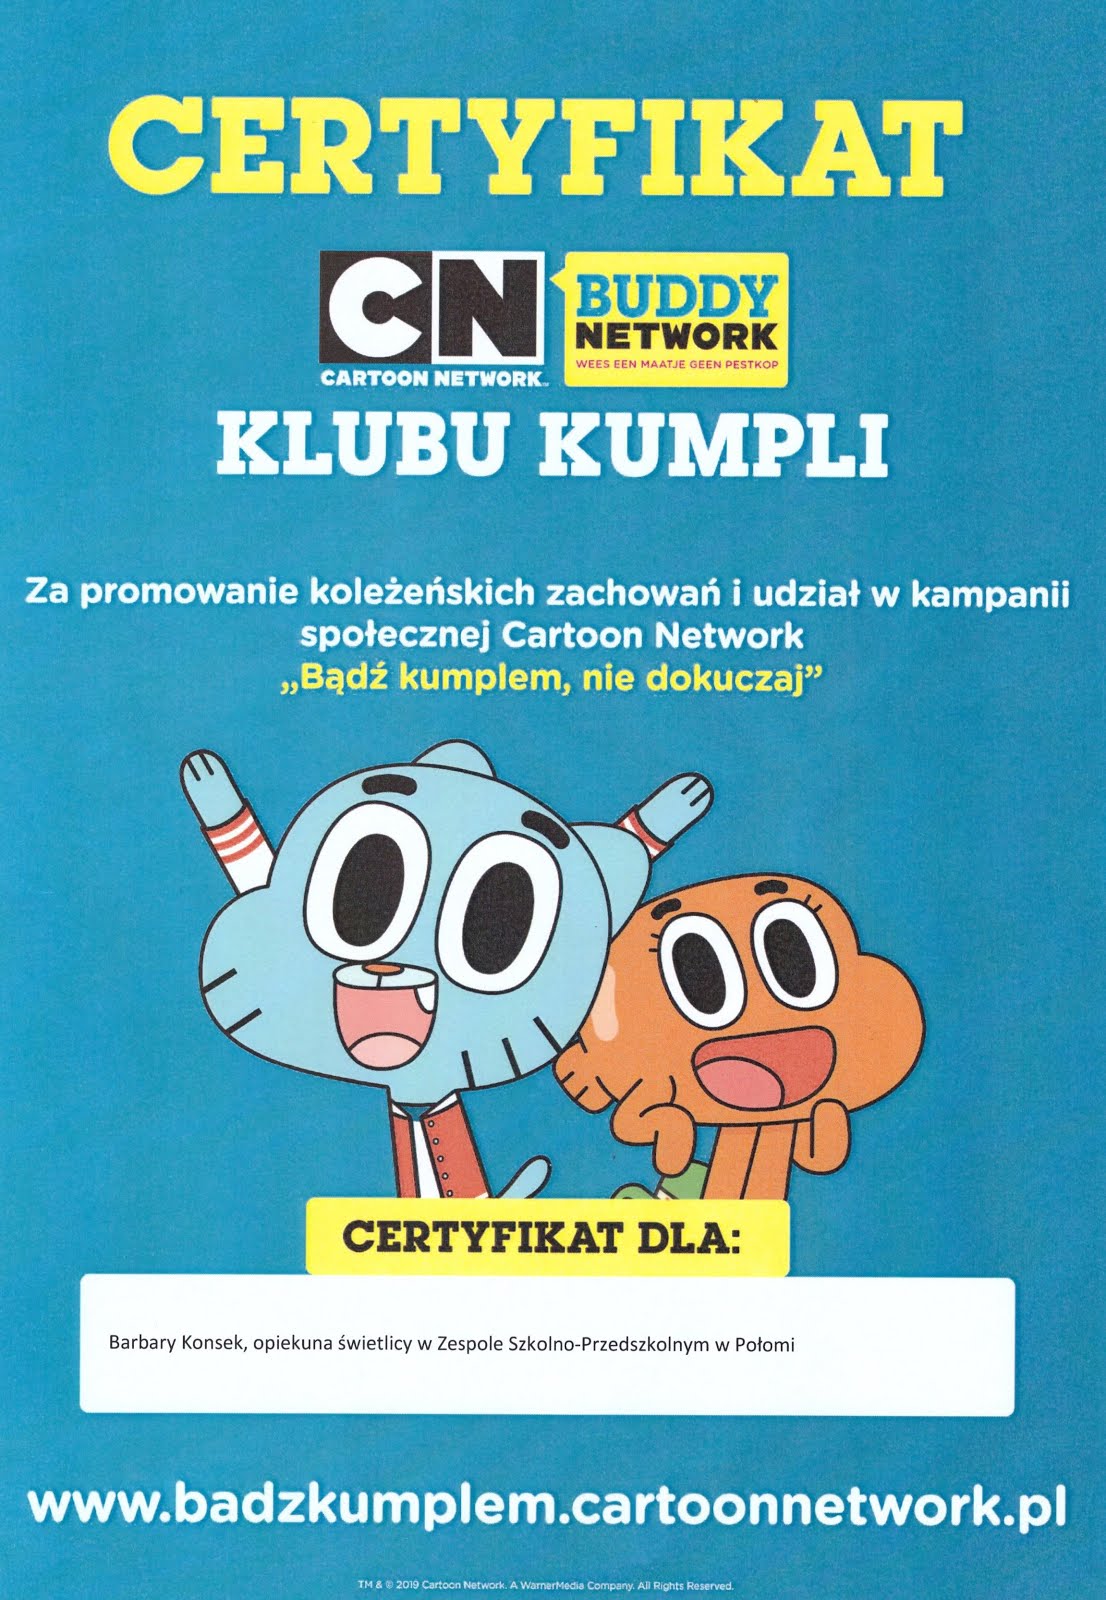 Certyfikat Cartoon Network "Bądź kumplem nie dokuczaj"